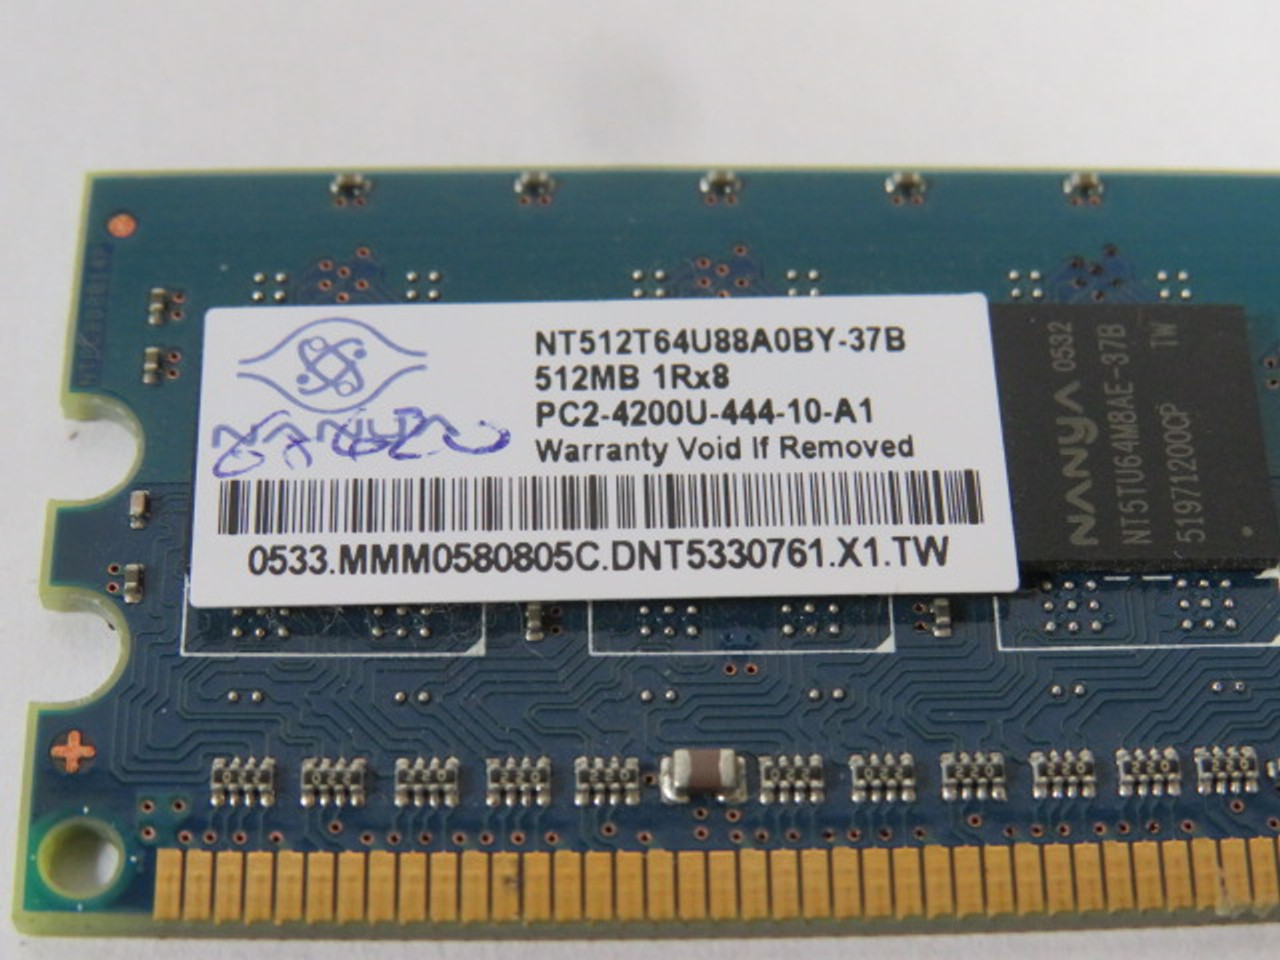 Nanya NT512T64U88A0BY-37B Ram 512MB USED